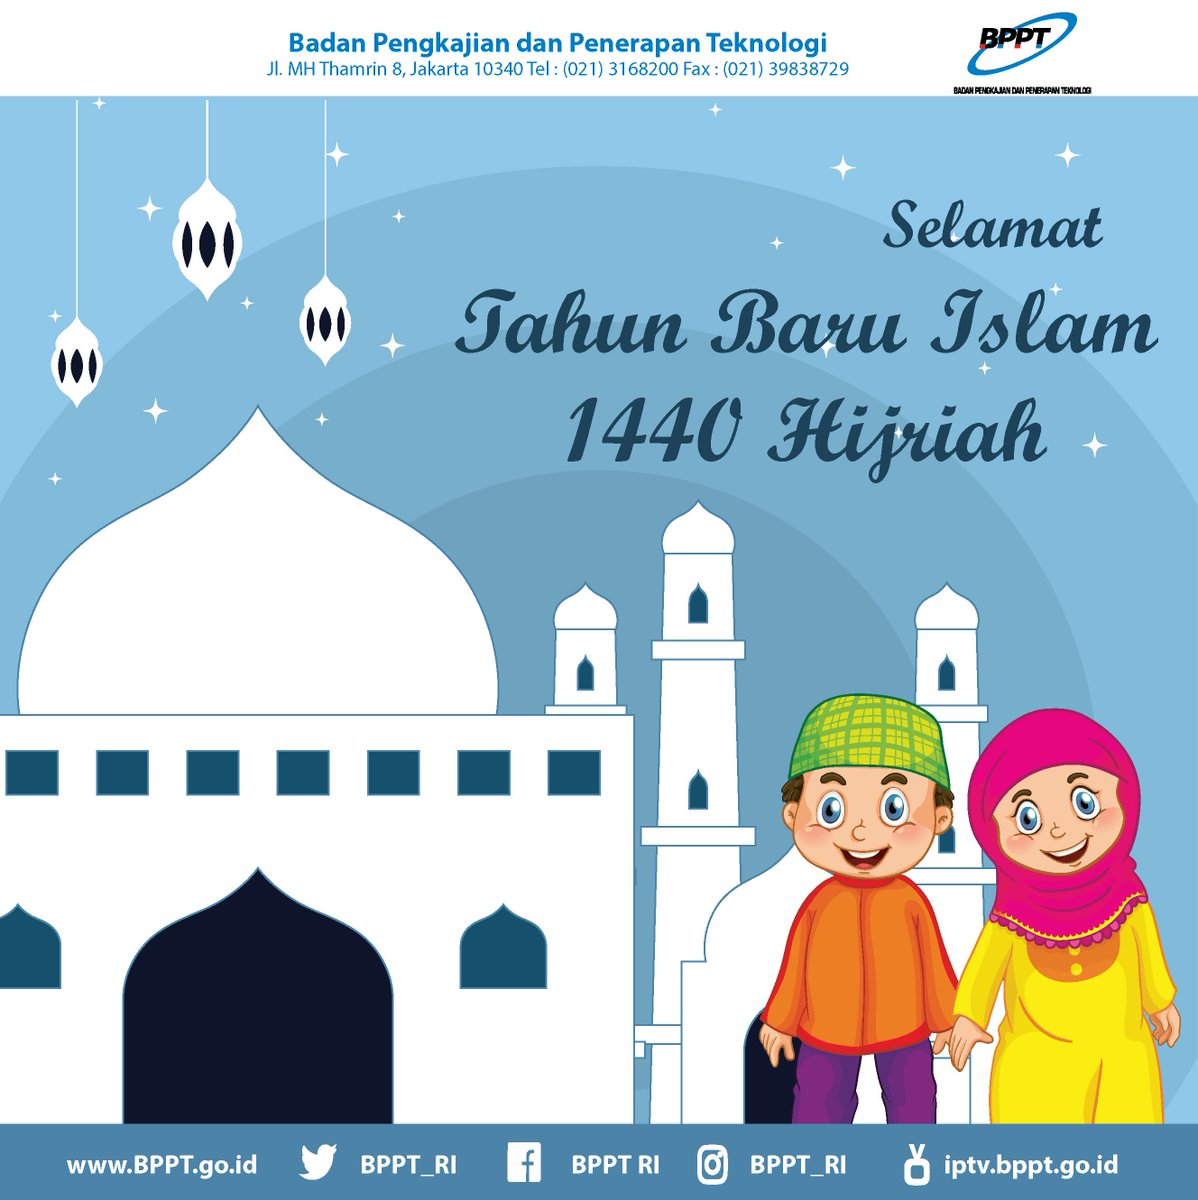 BPPT RI On Twitter Selamat Tahun Baru Islam 1440 H Mari Kita